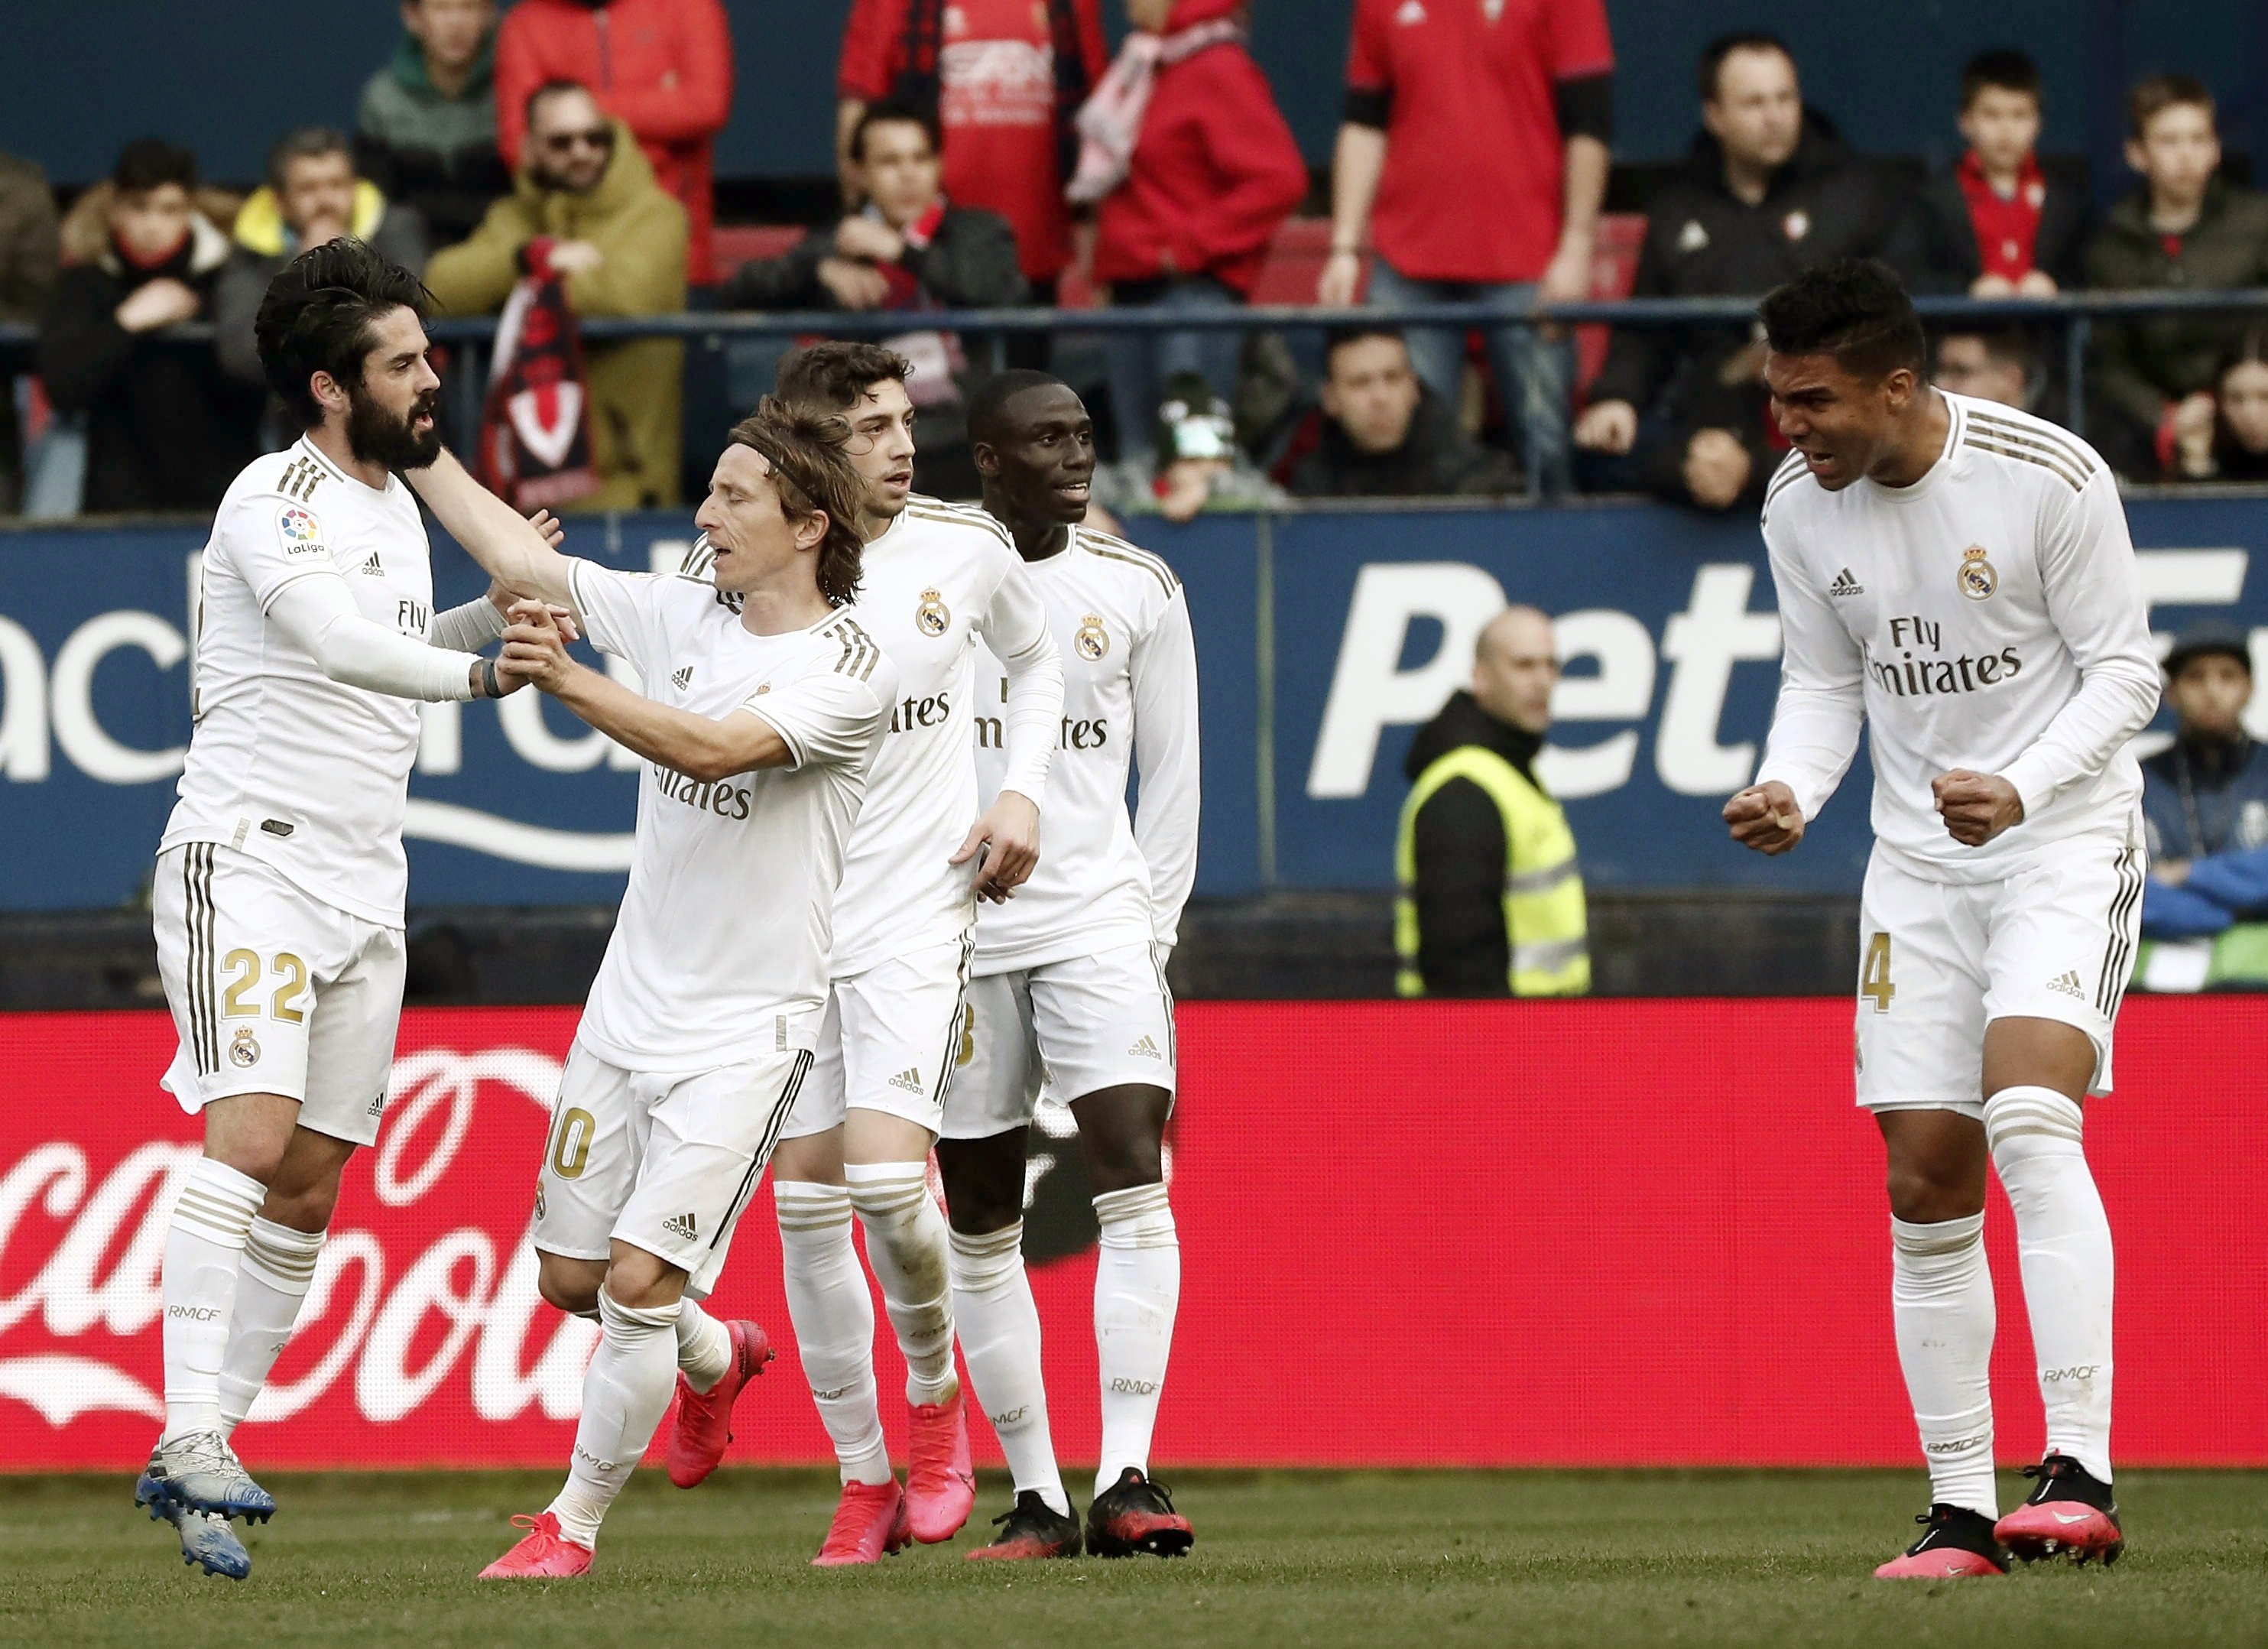 El Madrid gana al Osasuna en una tarde complicada para los de Zidane (1-4)